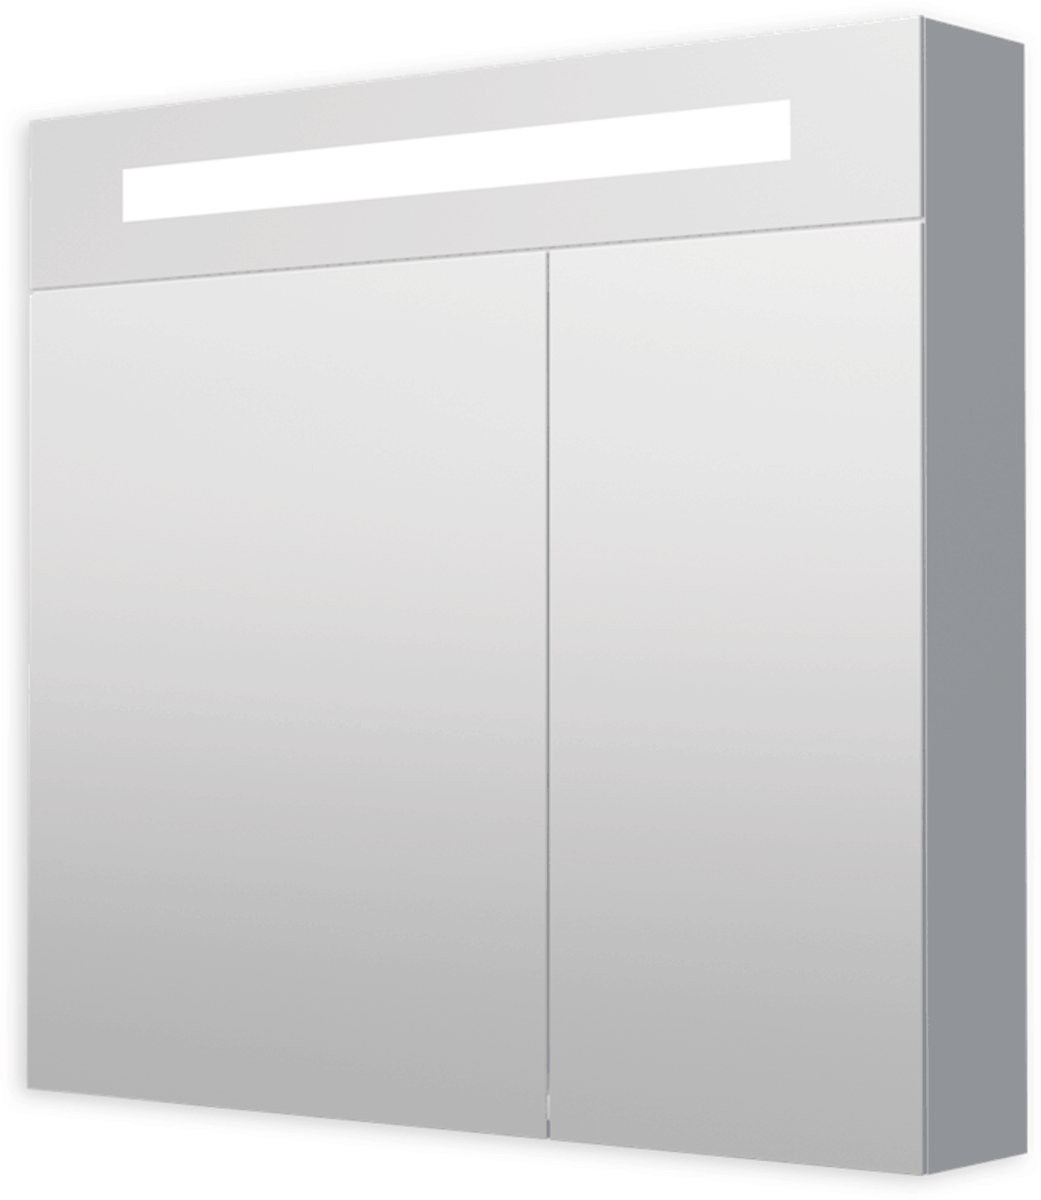 Zrcadlová skříňka s osvětlením Naturel Iluxit 80x75 cm MDF šedostříbrná GALZS80LED Naturel